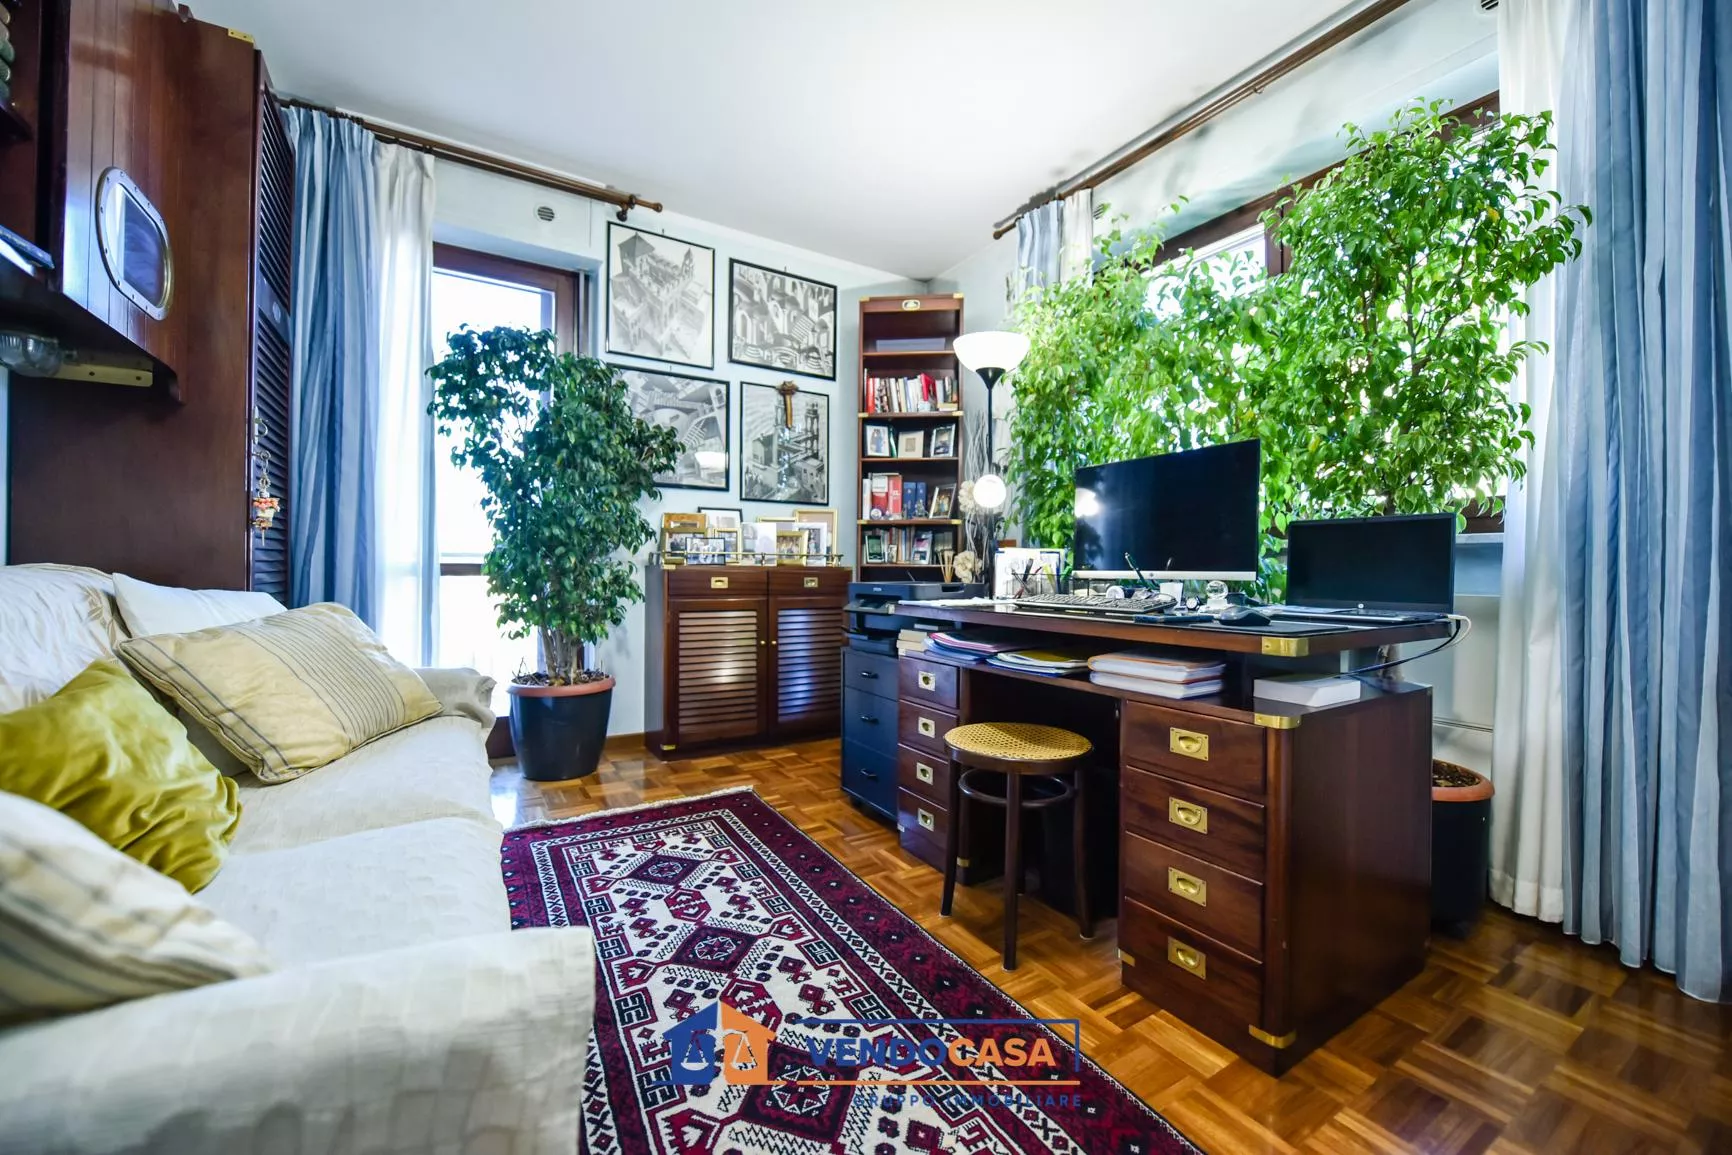 Immagine per Appartamento in vendita a Villastellone via Largo Stazione 3